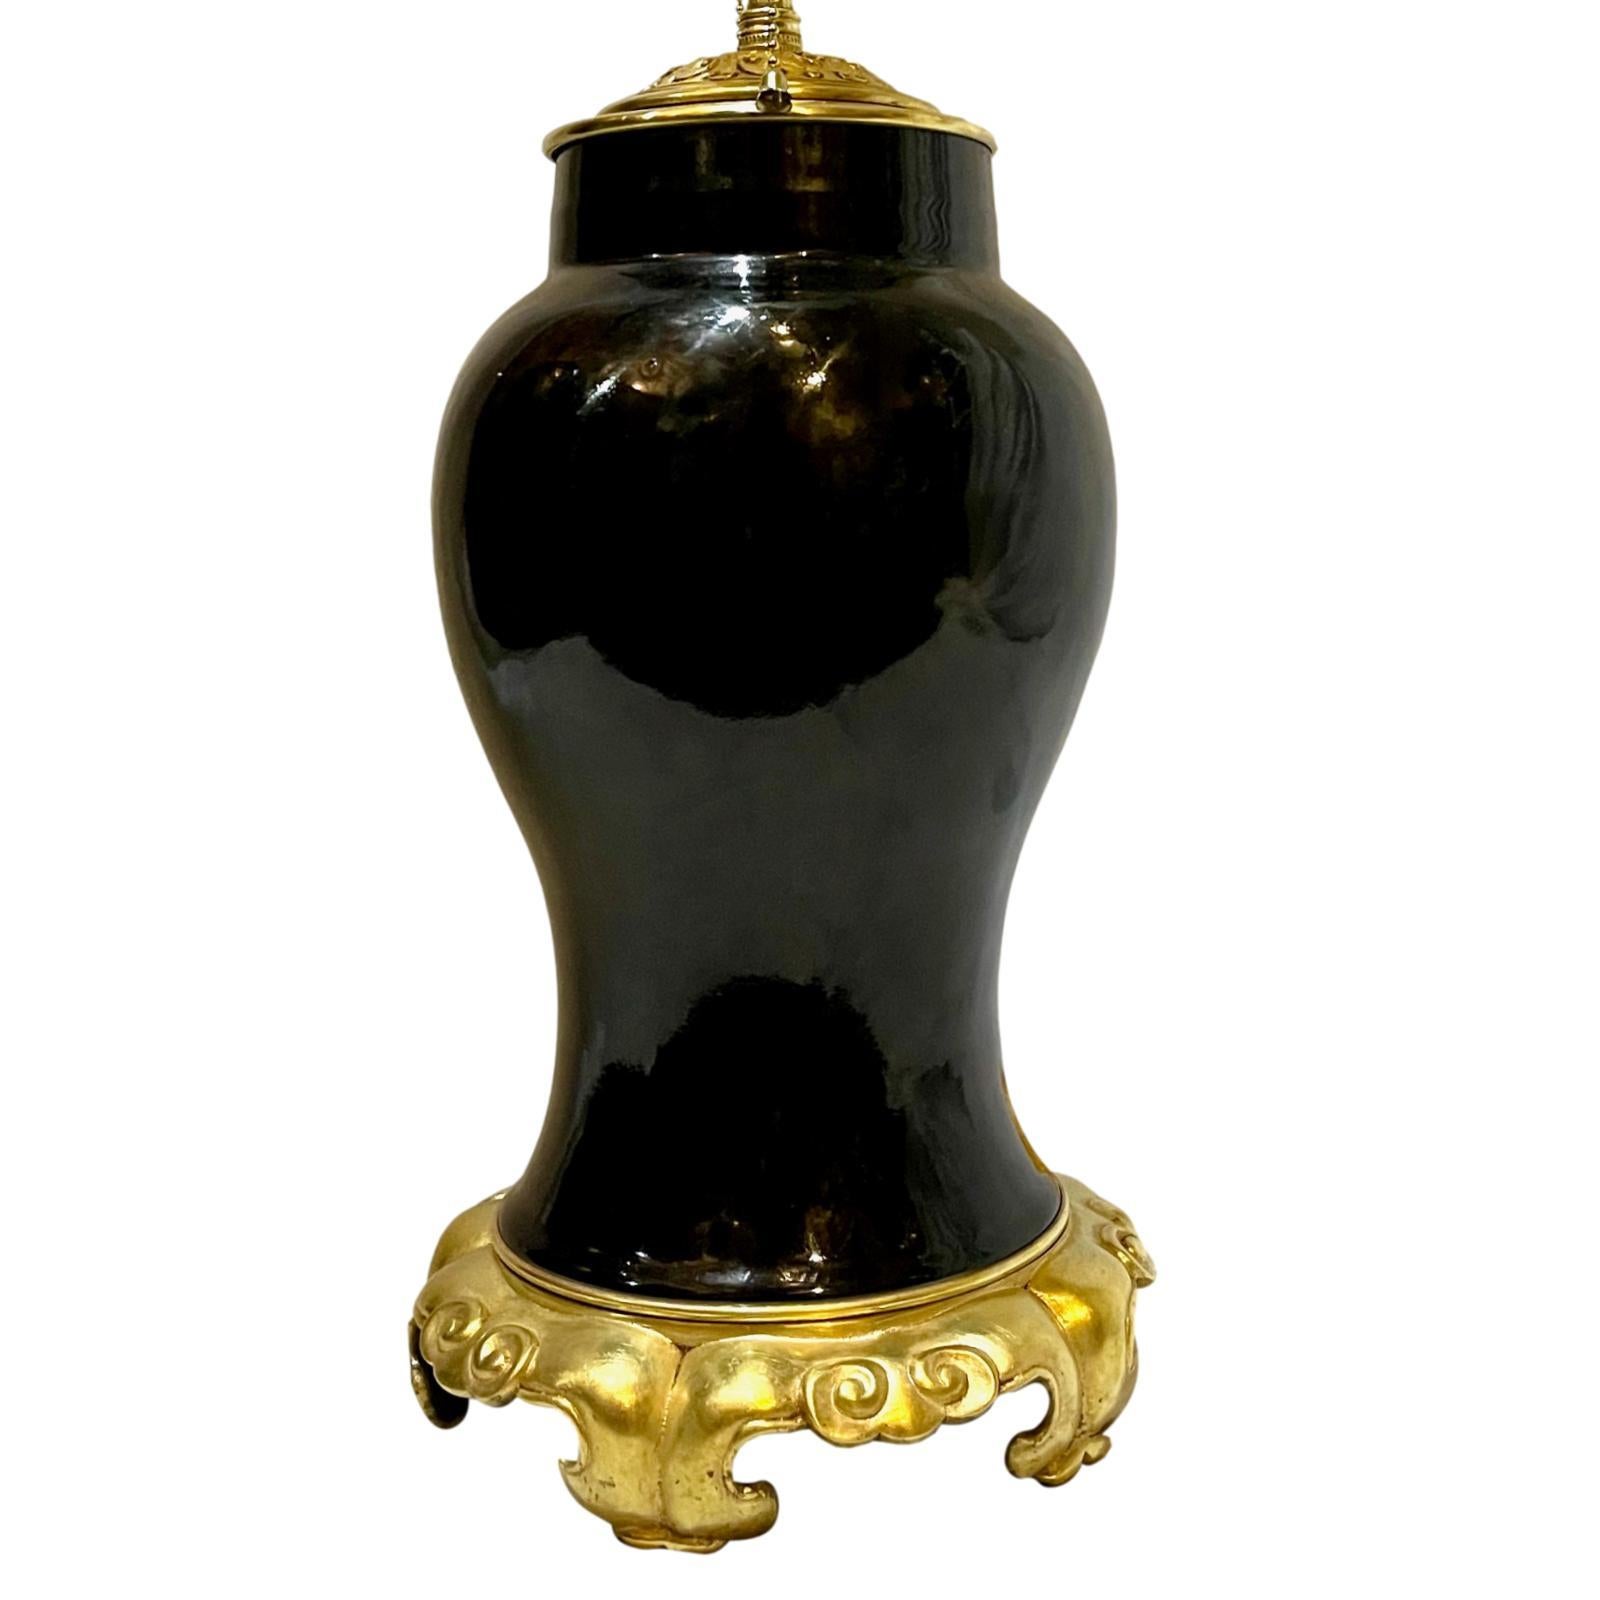 Eine einzelne französische Porzellan-Tischlampe um 1900 mit vergoldetem Bronzefuß und chinesischem Porzellankörper.

Abmessungen:
Höhe des Körpers: 14,5